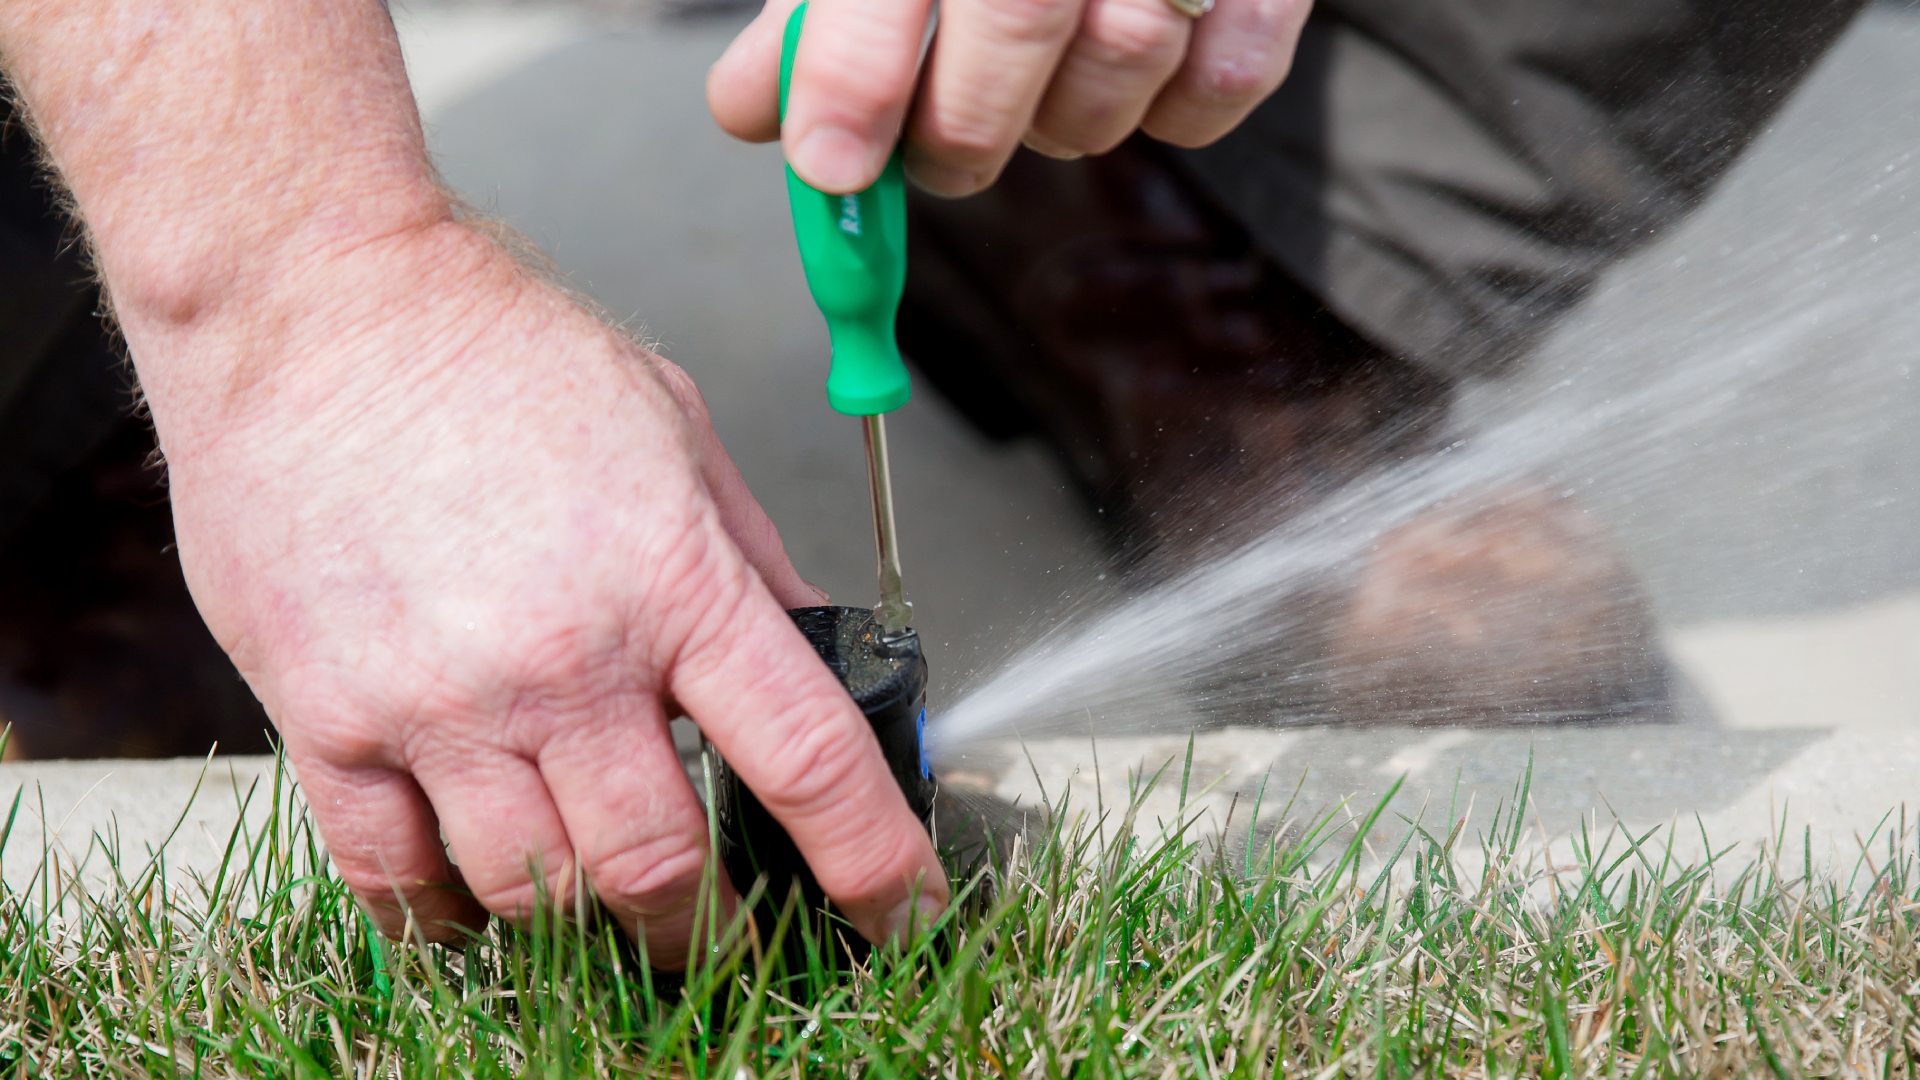 Professional performing irrigation repair in Greensboro, NC.